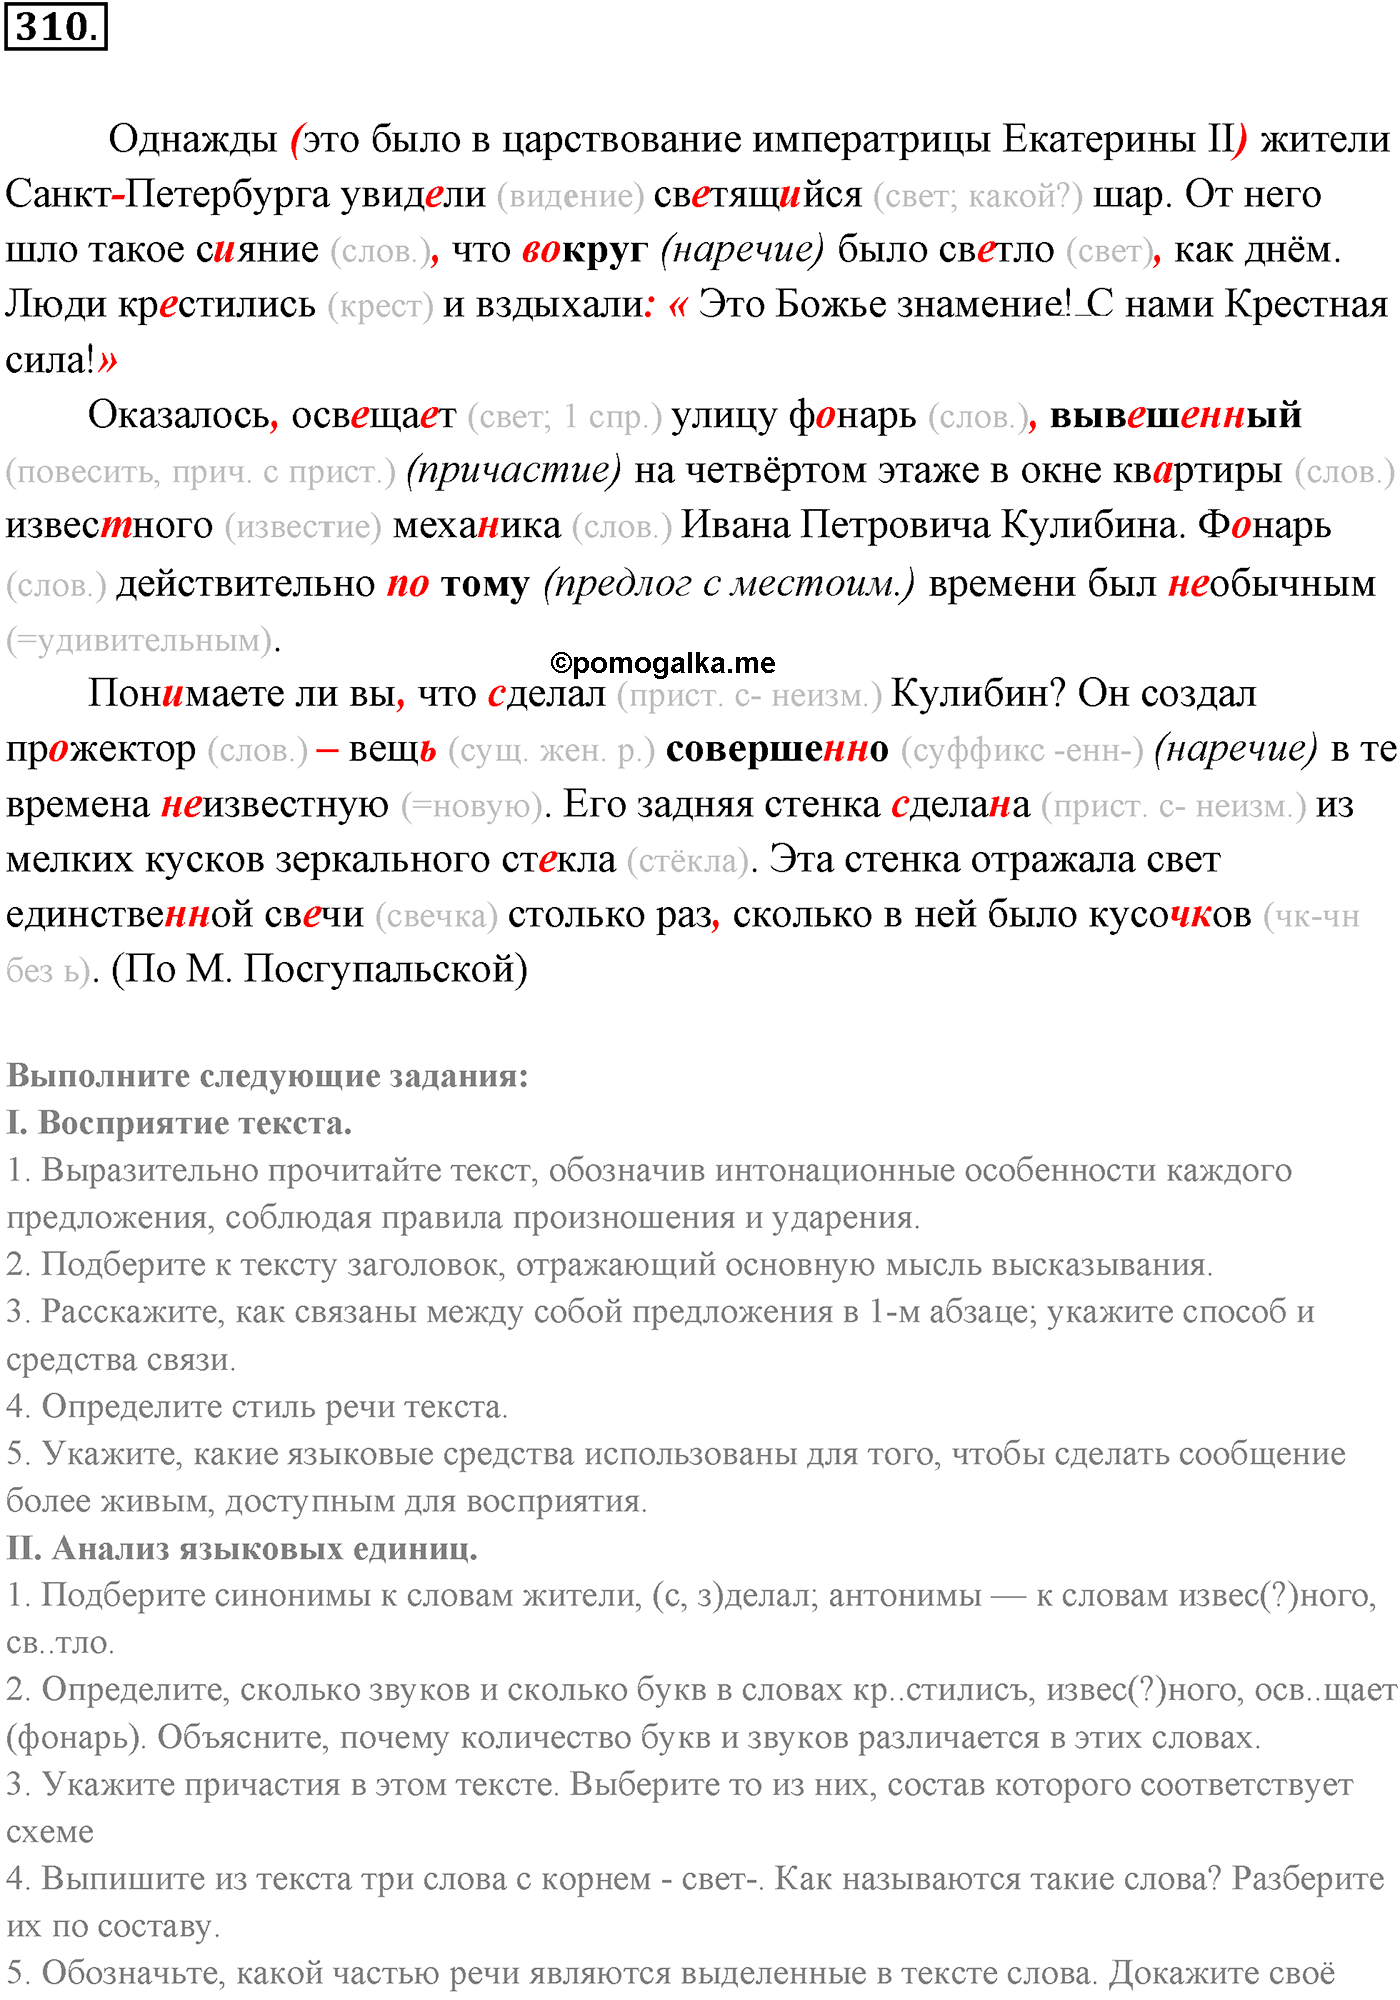 упражнение №310 русский язык 9 класс Разумовская